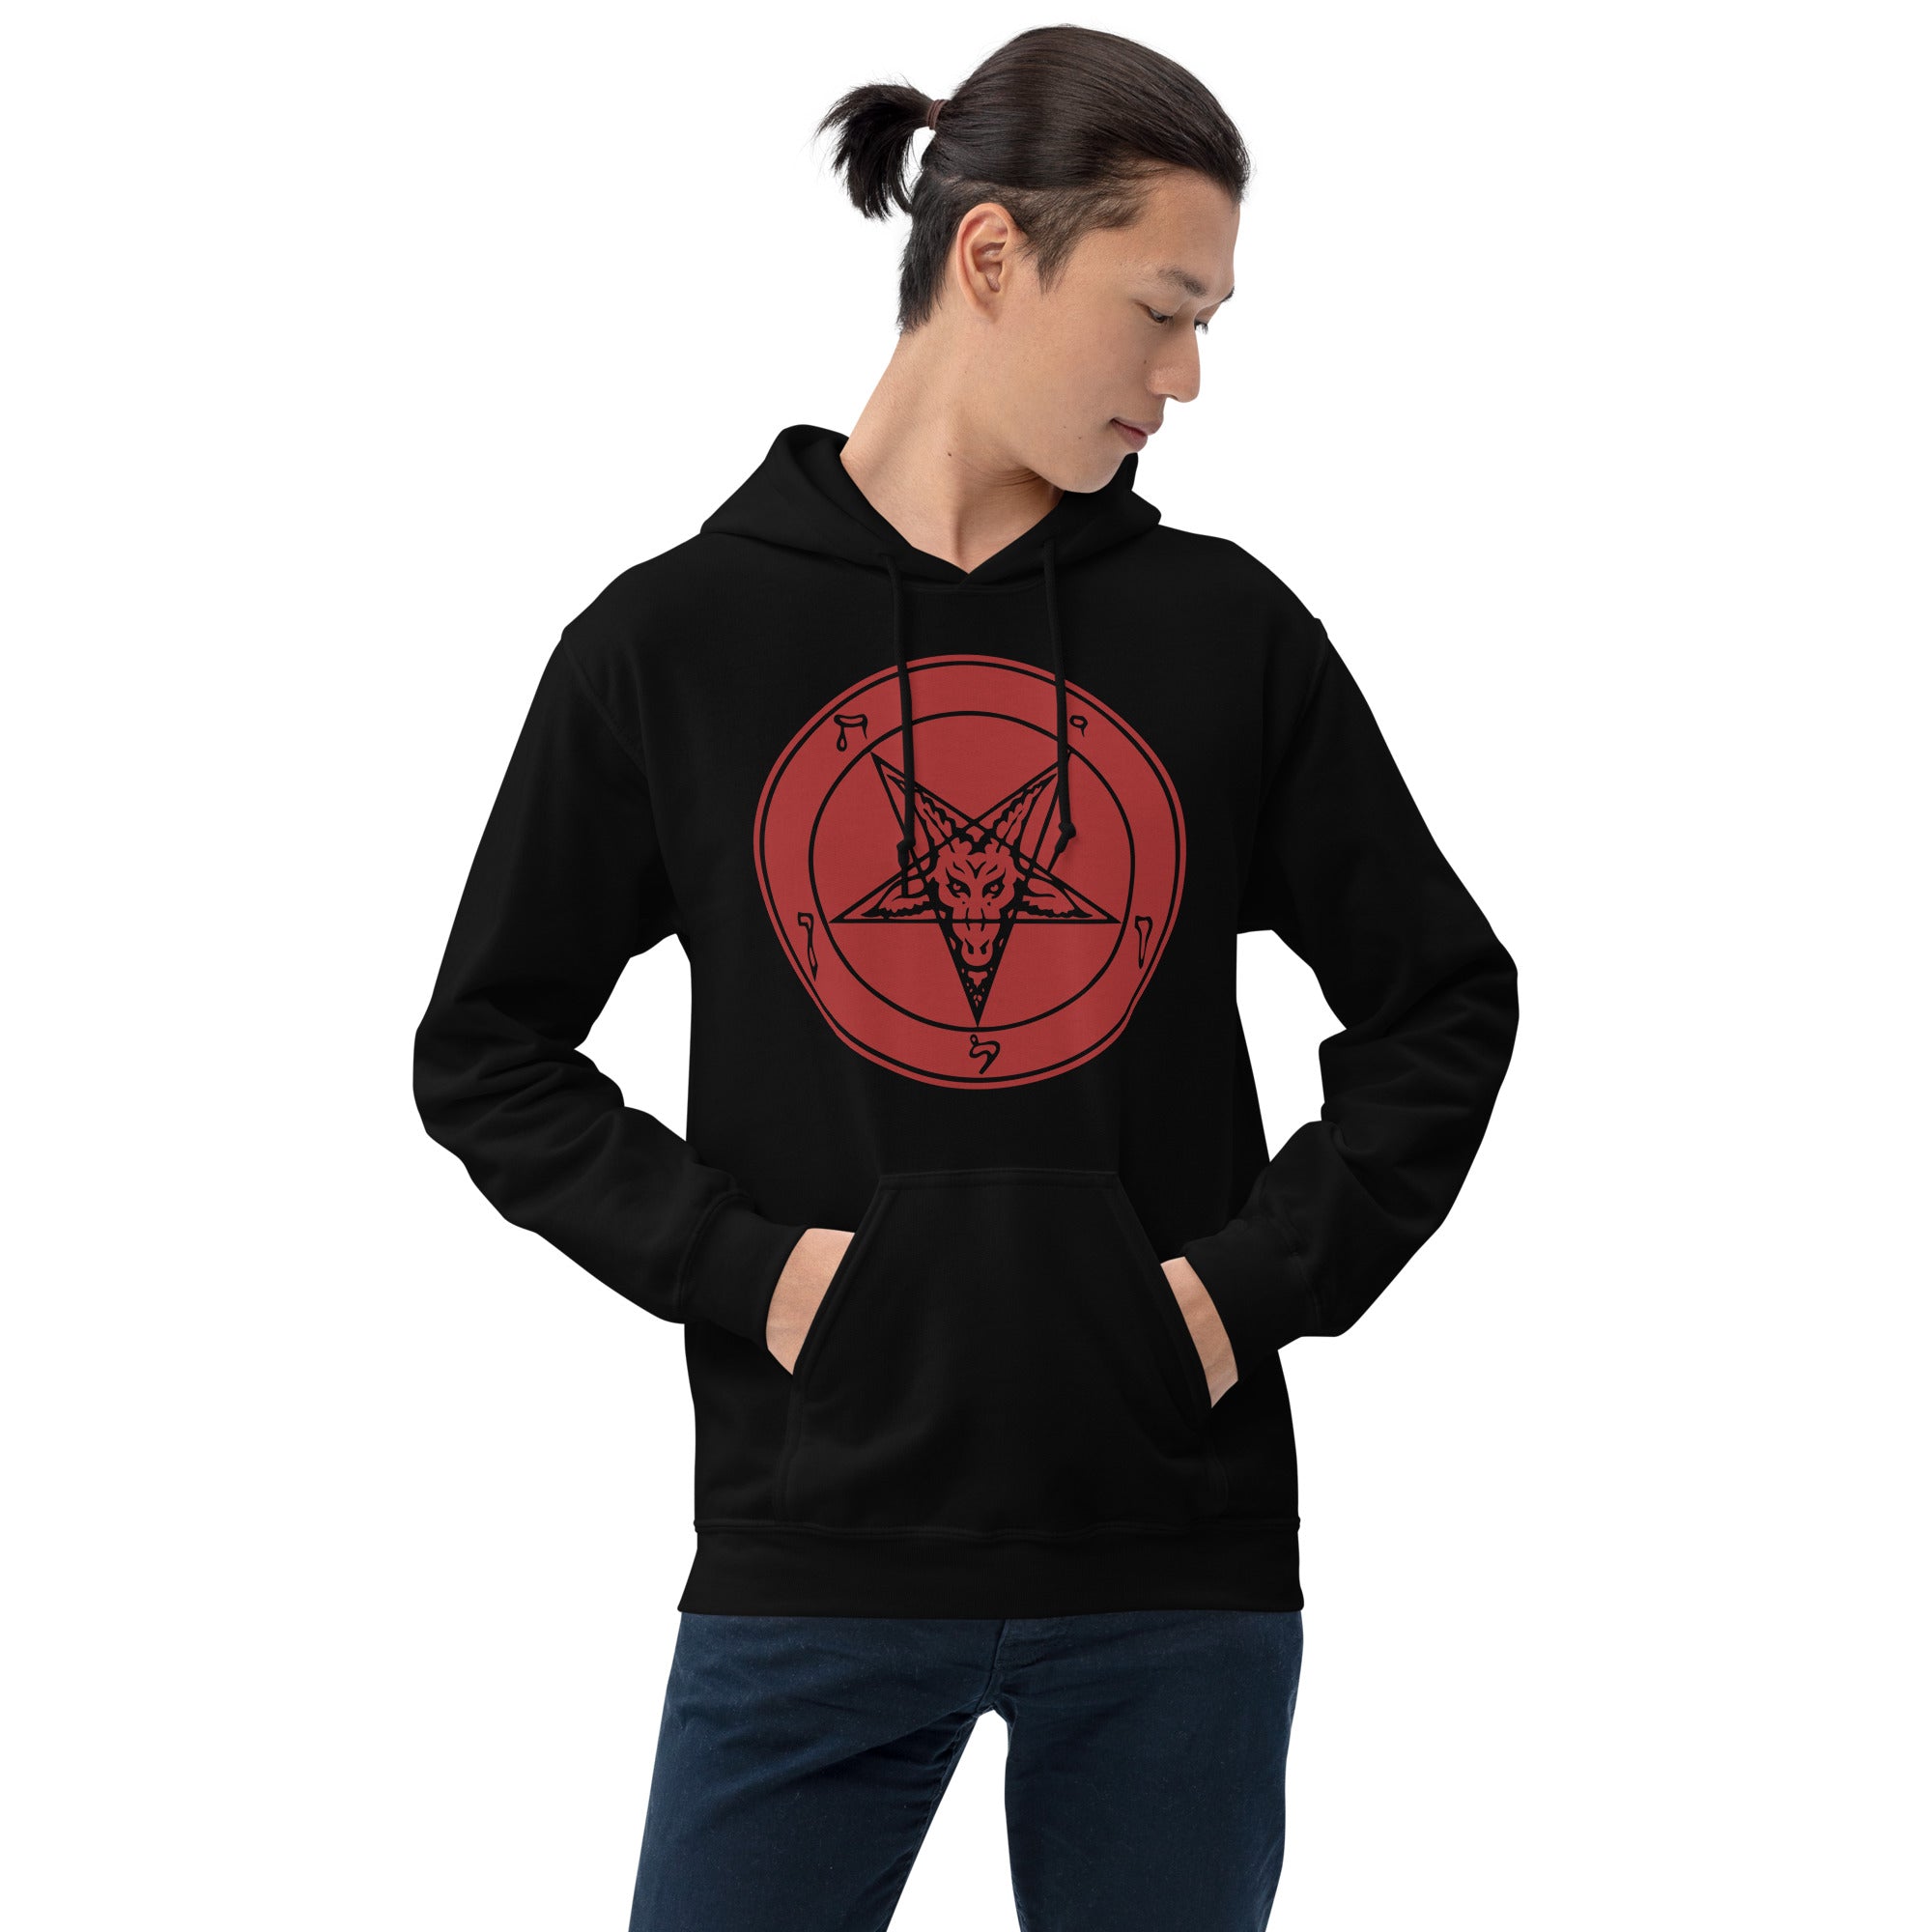 Classic Sigil of Baphomet Goat Head Pentagram Unisex Hoodie Sweatshirt Red Print - Edge of Life Designs